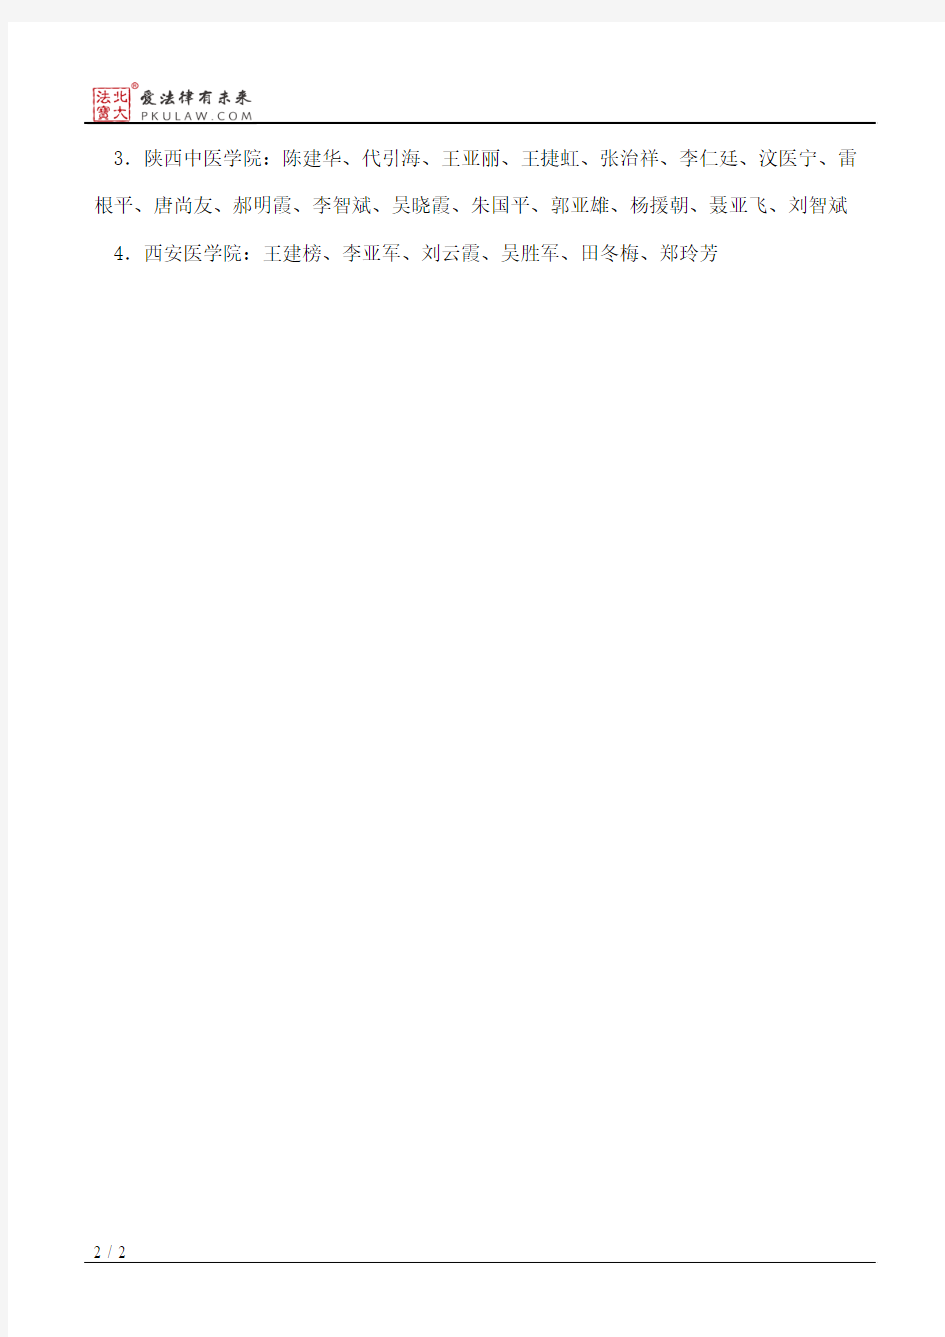 陕西省教育厅关于刘天路等144位同志任职资格的批复